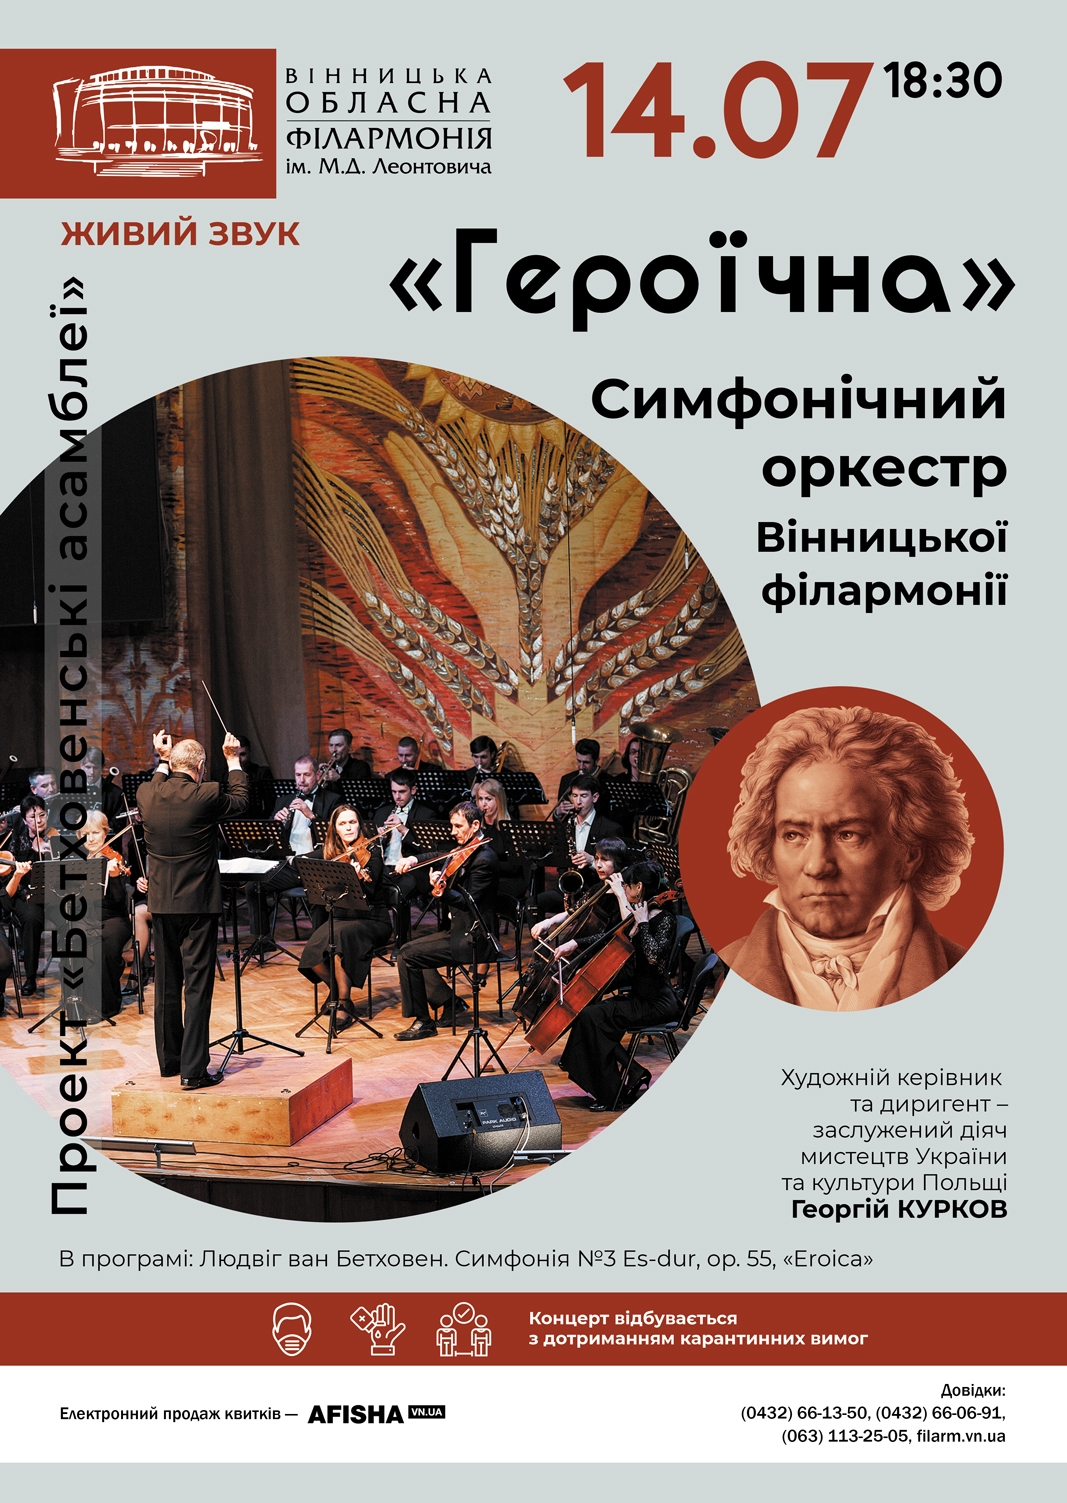 Вінничан запрошують на “Бетховенські асамблеї”